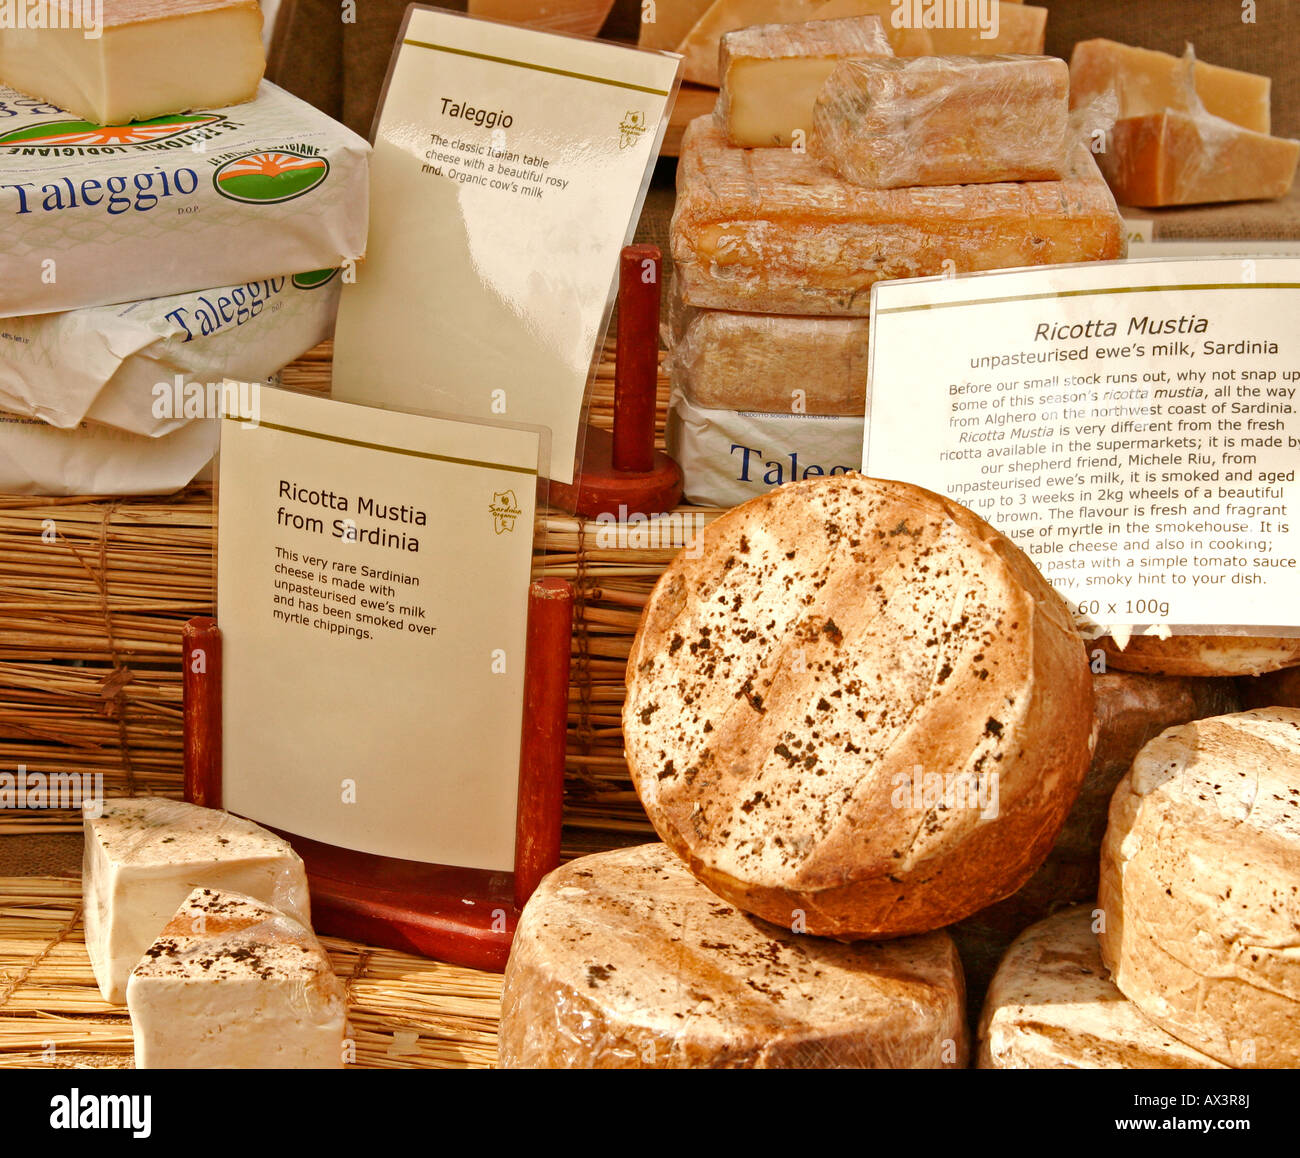 Market stall display of Taleggio and Ricotta cheeses from Sardina Italy Stock Photo